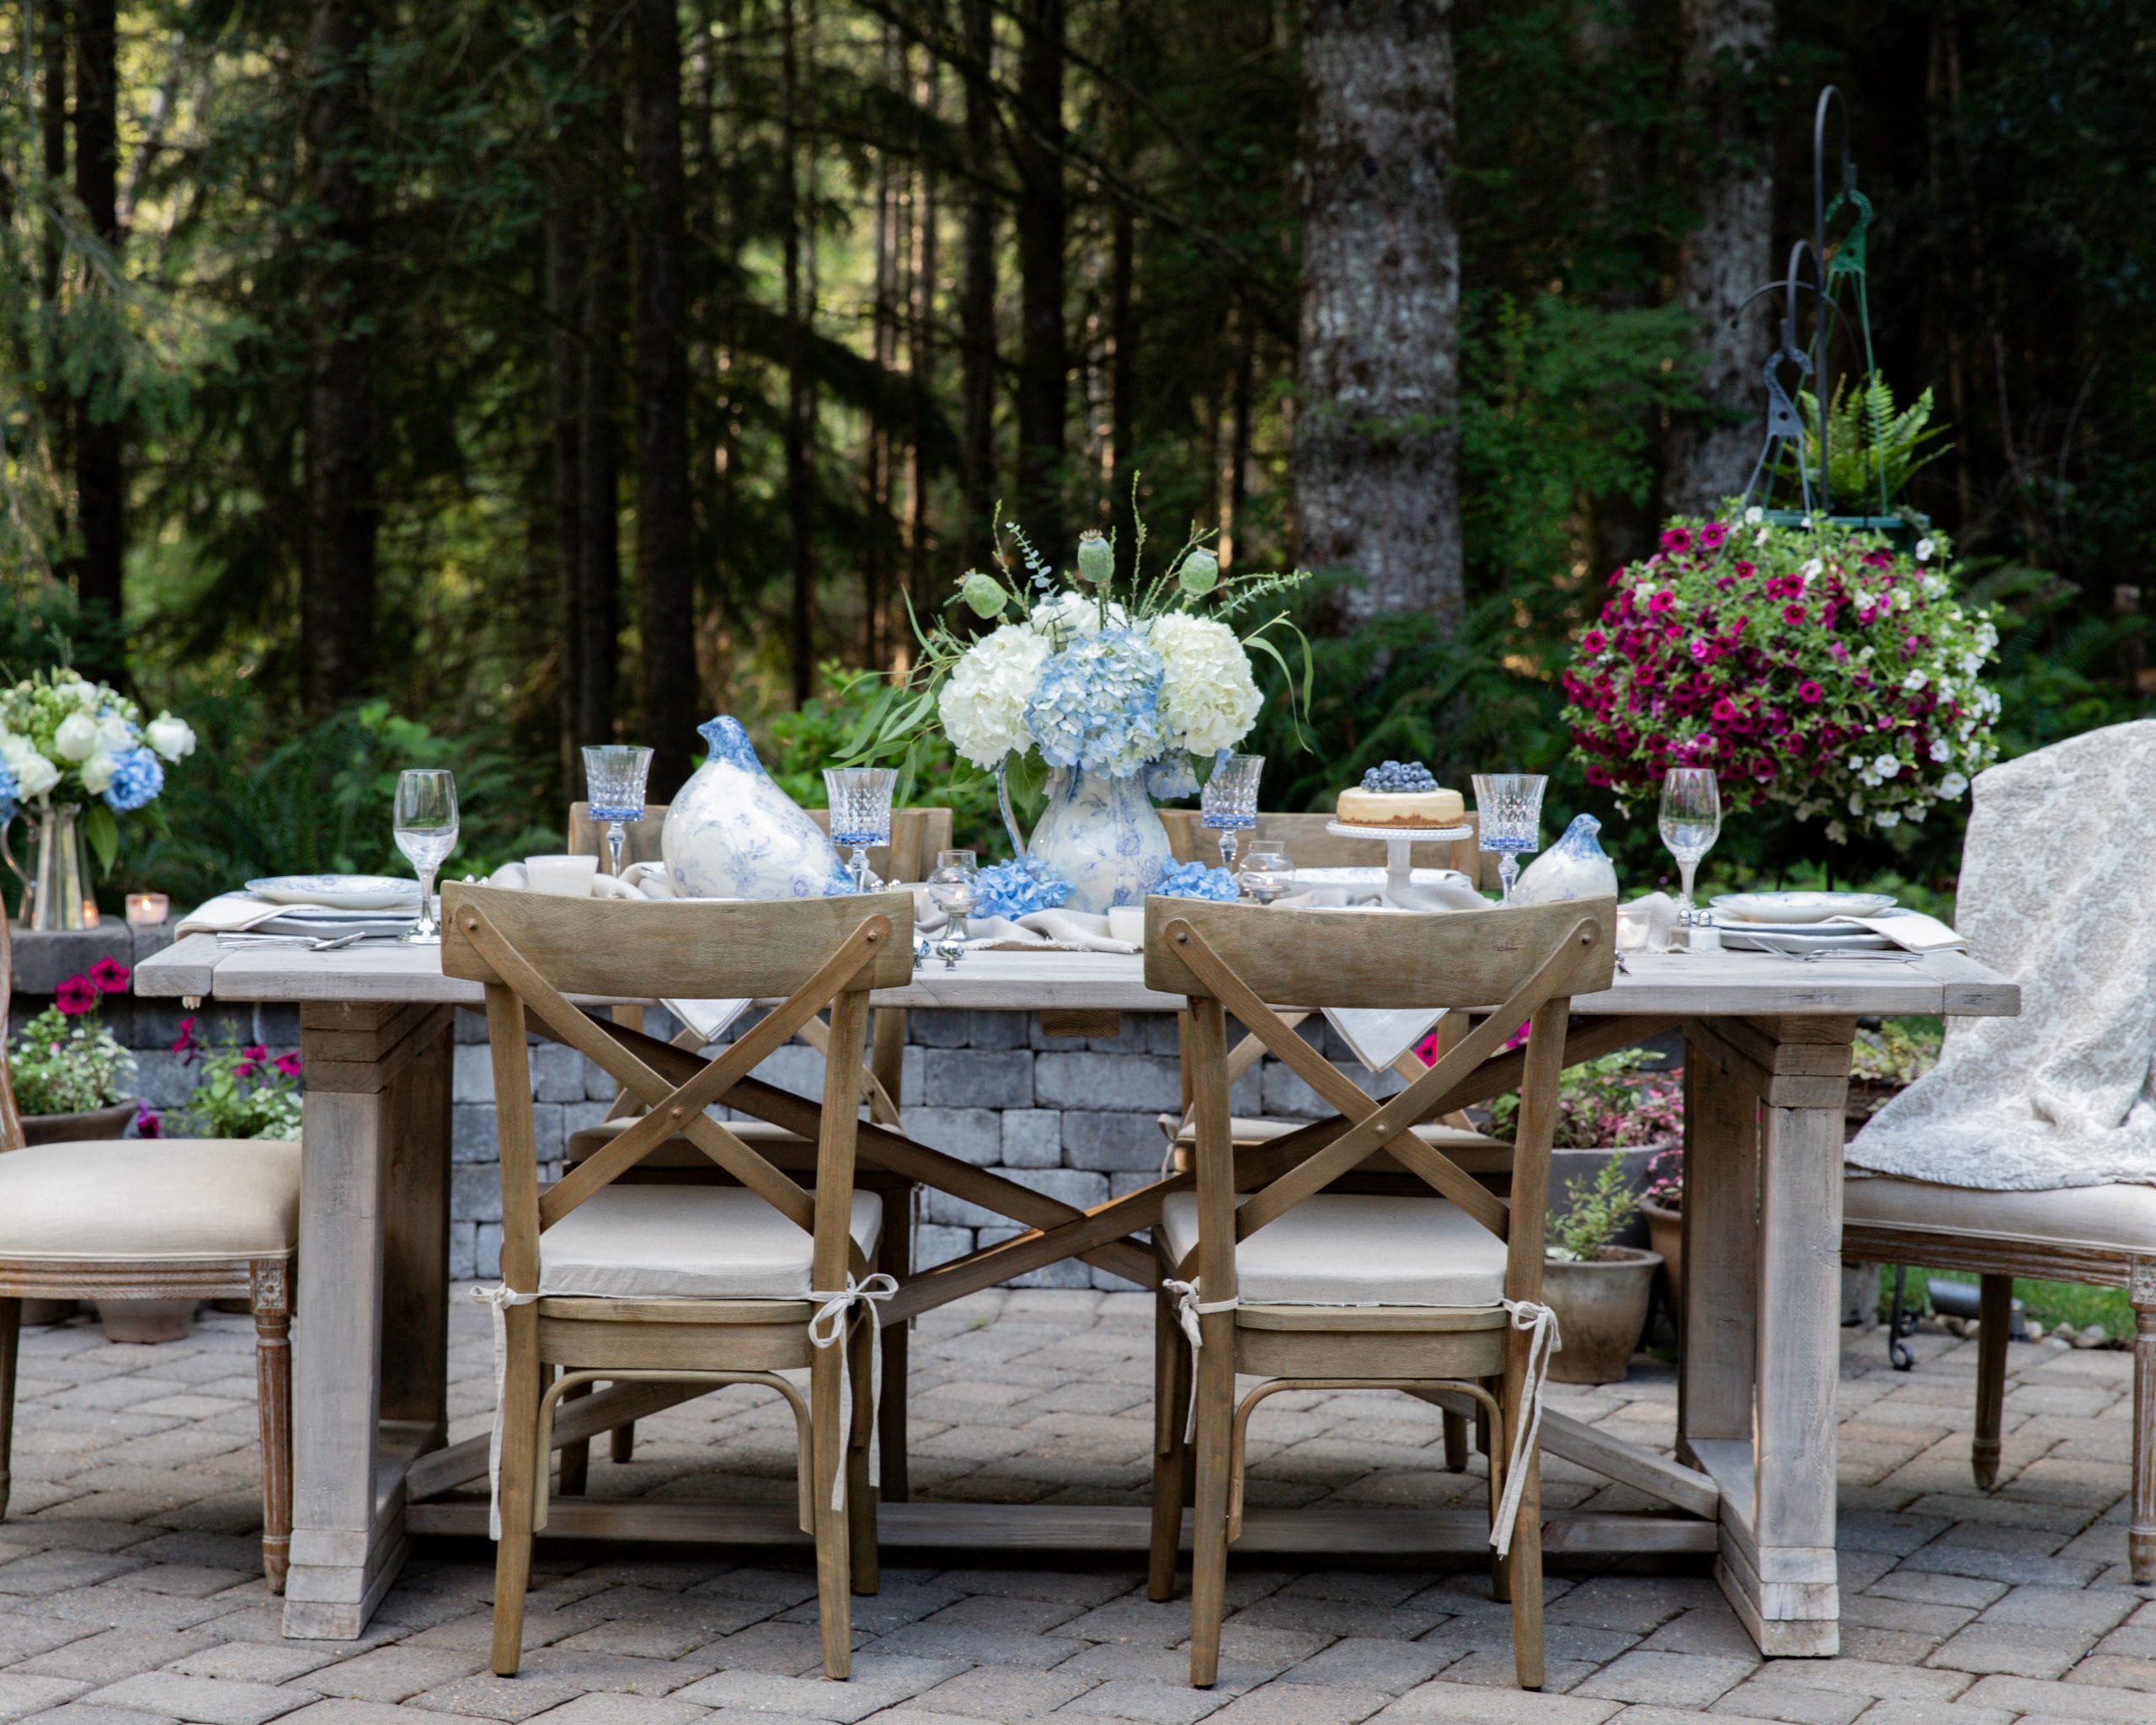 Spring Table Decor Ideas | Outdoor Spring Decor Inspiration